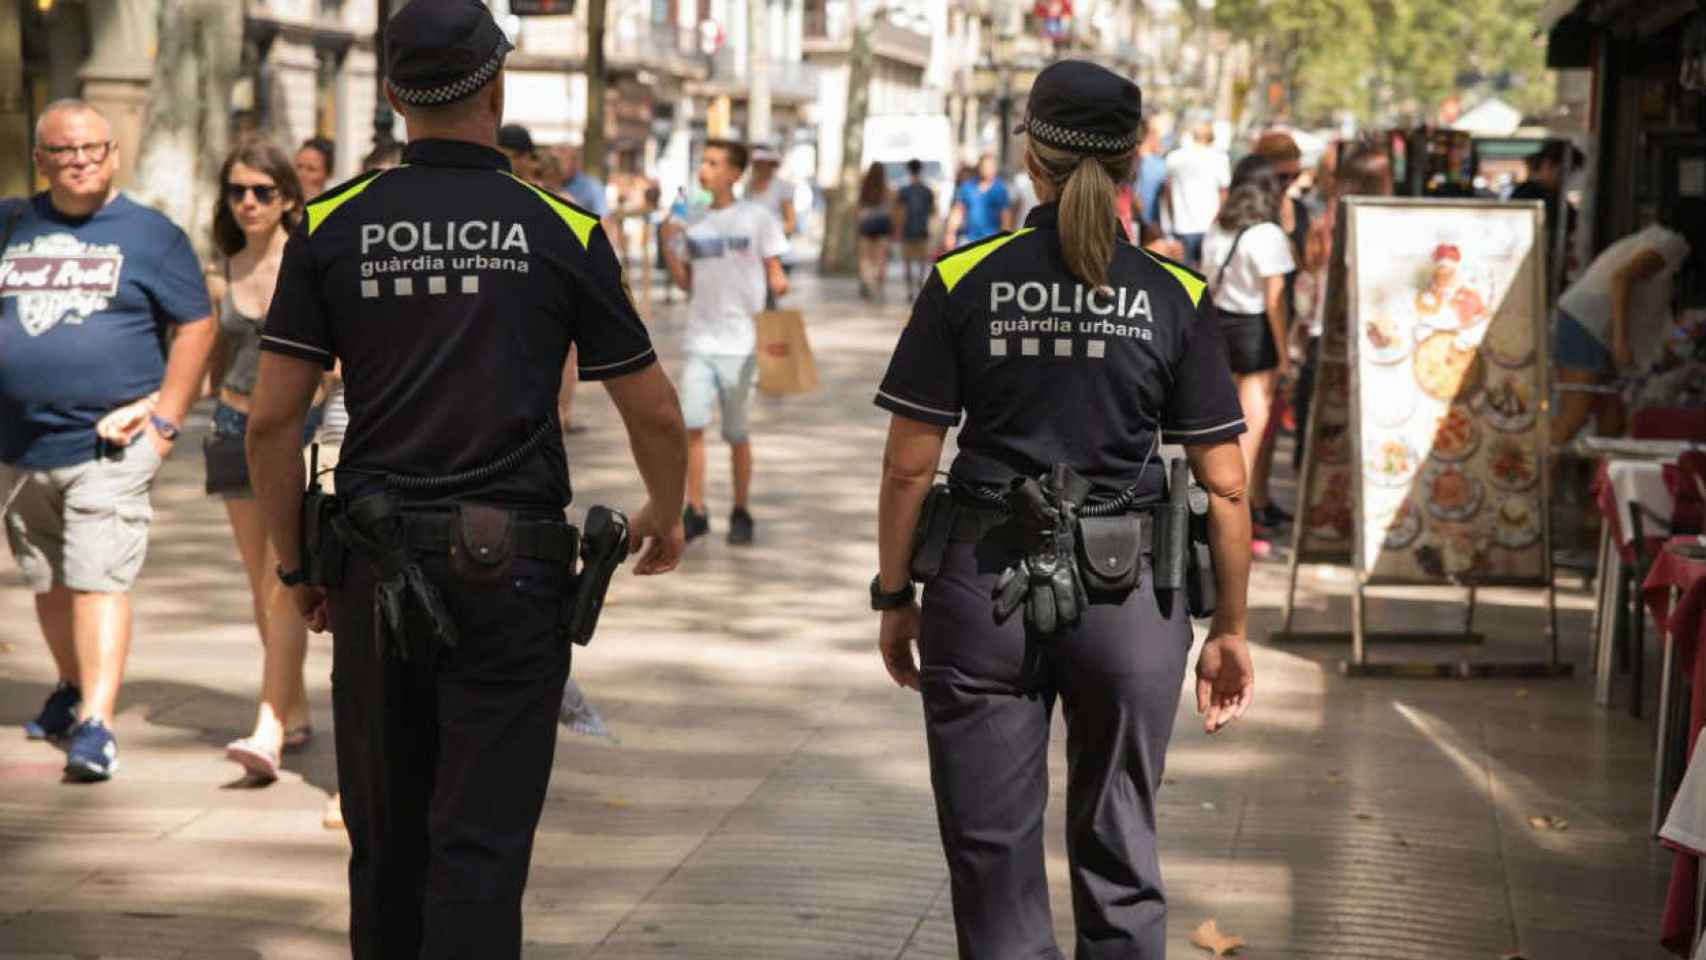 Agentes de la Guàrdia Urbana patrullando en la ciudad / @barcelona_GUB